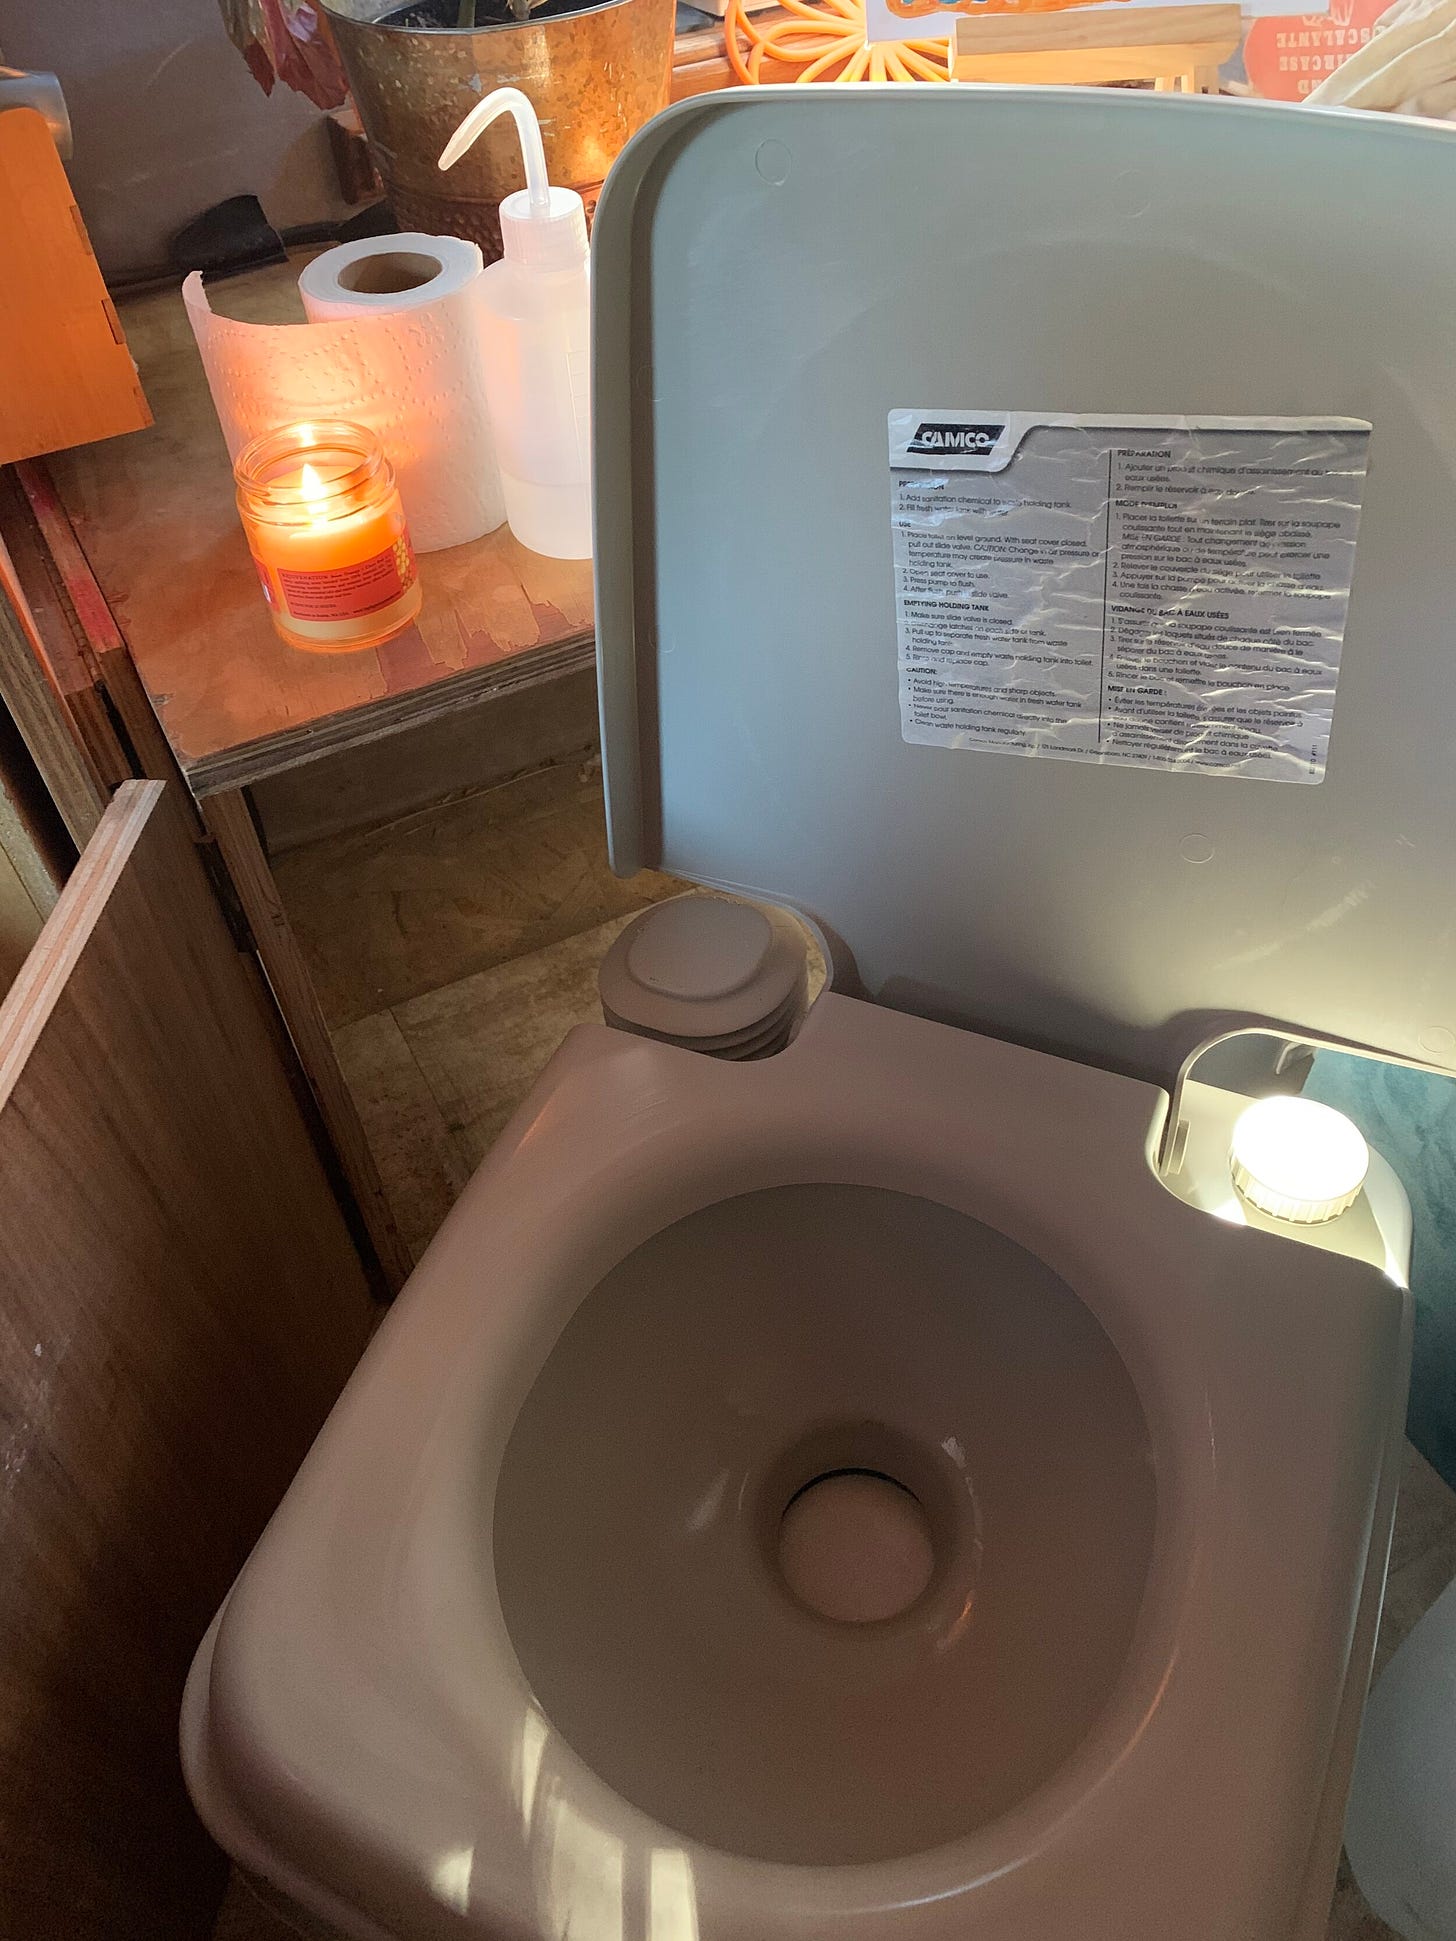 A plastic camping toilet inside a van